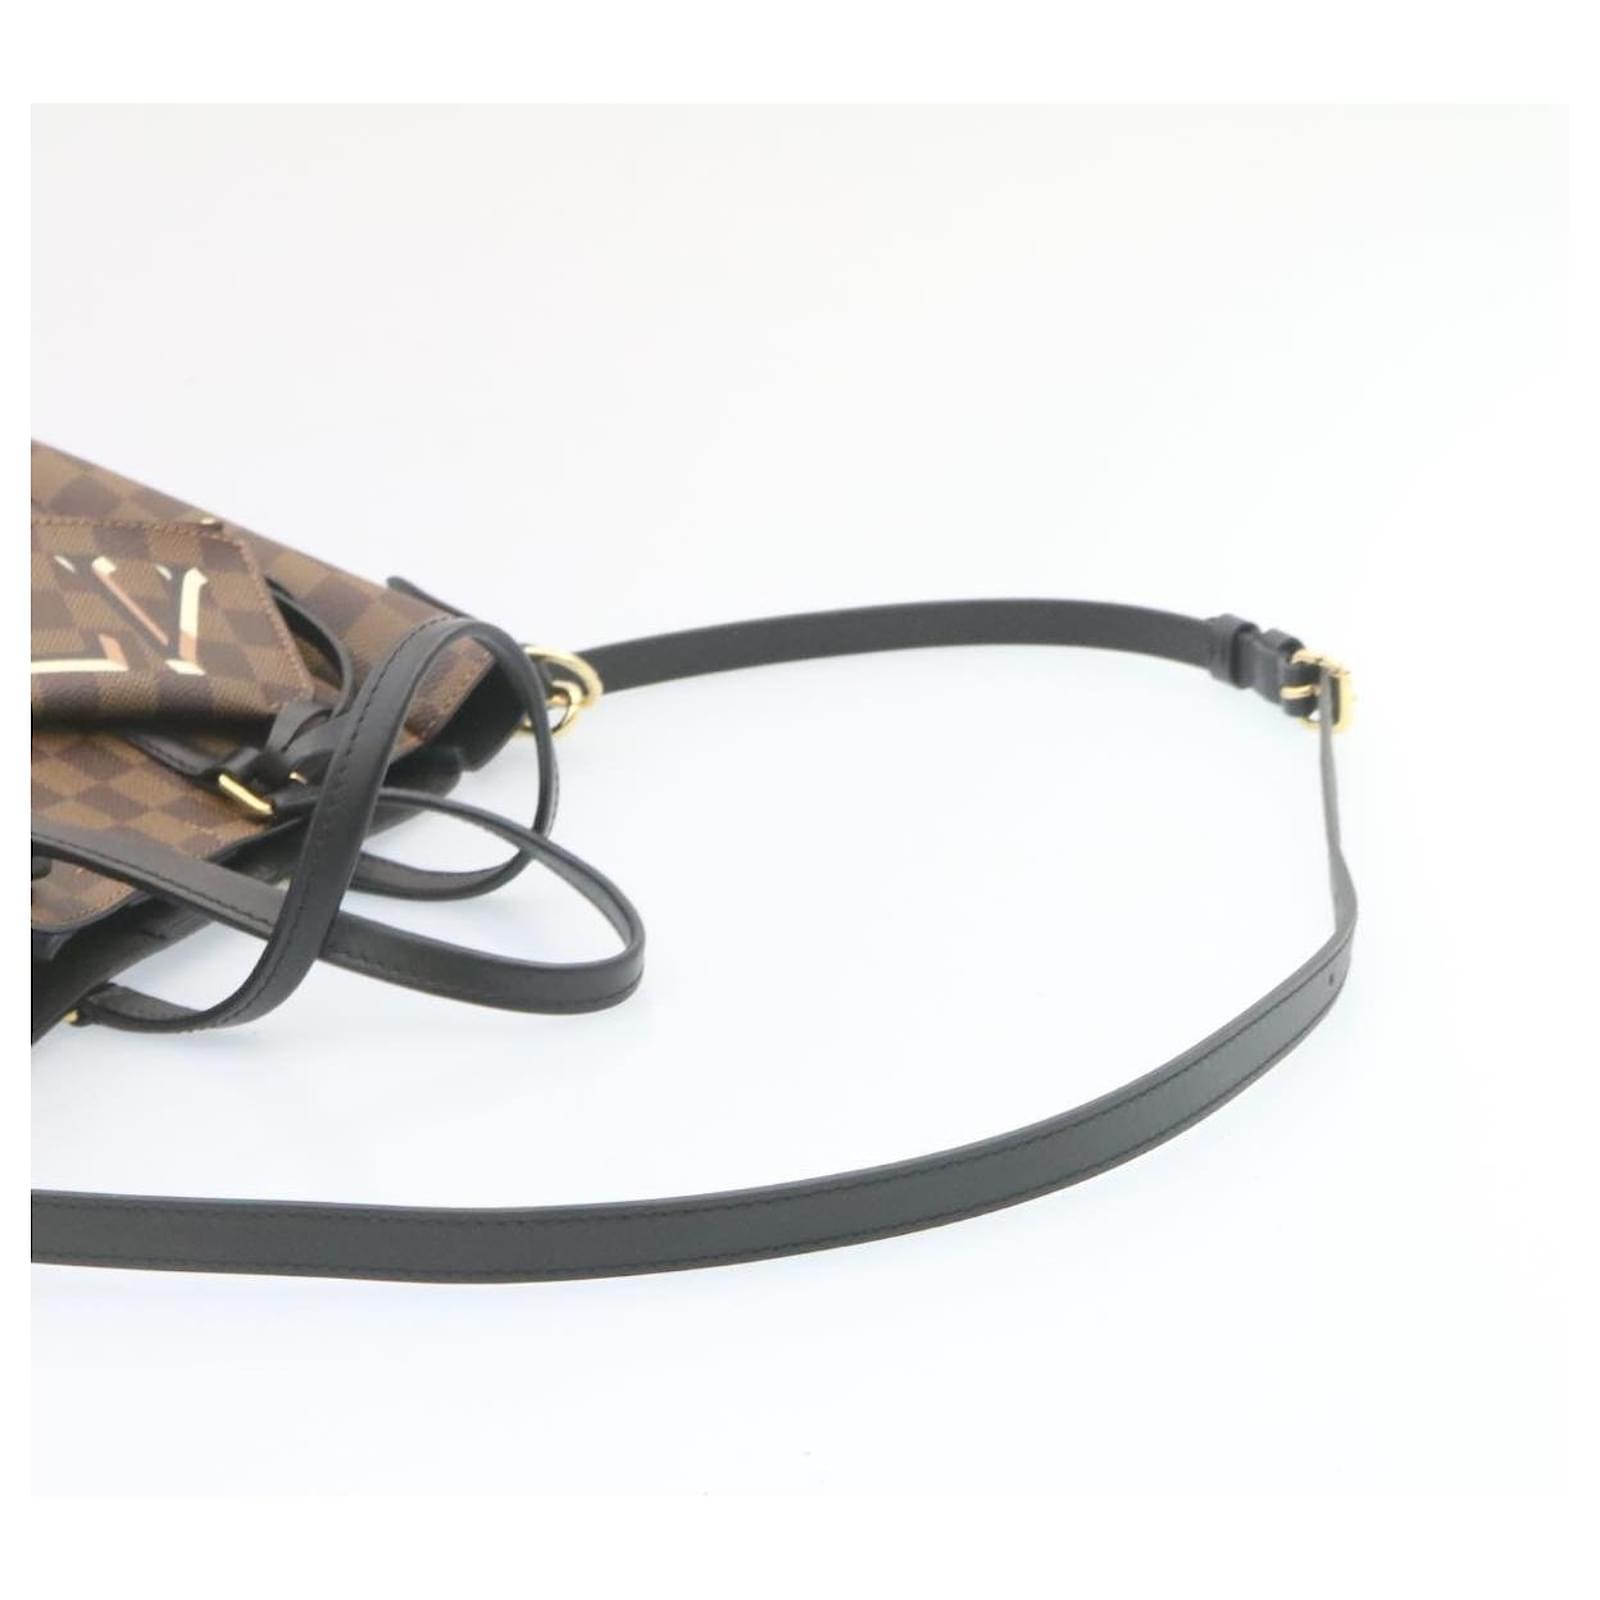 Auth Louis Vuitton Damier Belmont NV BB Handbag Shoulder Bag N60297 -  e51455a